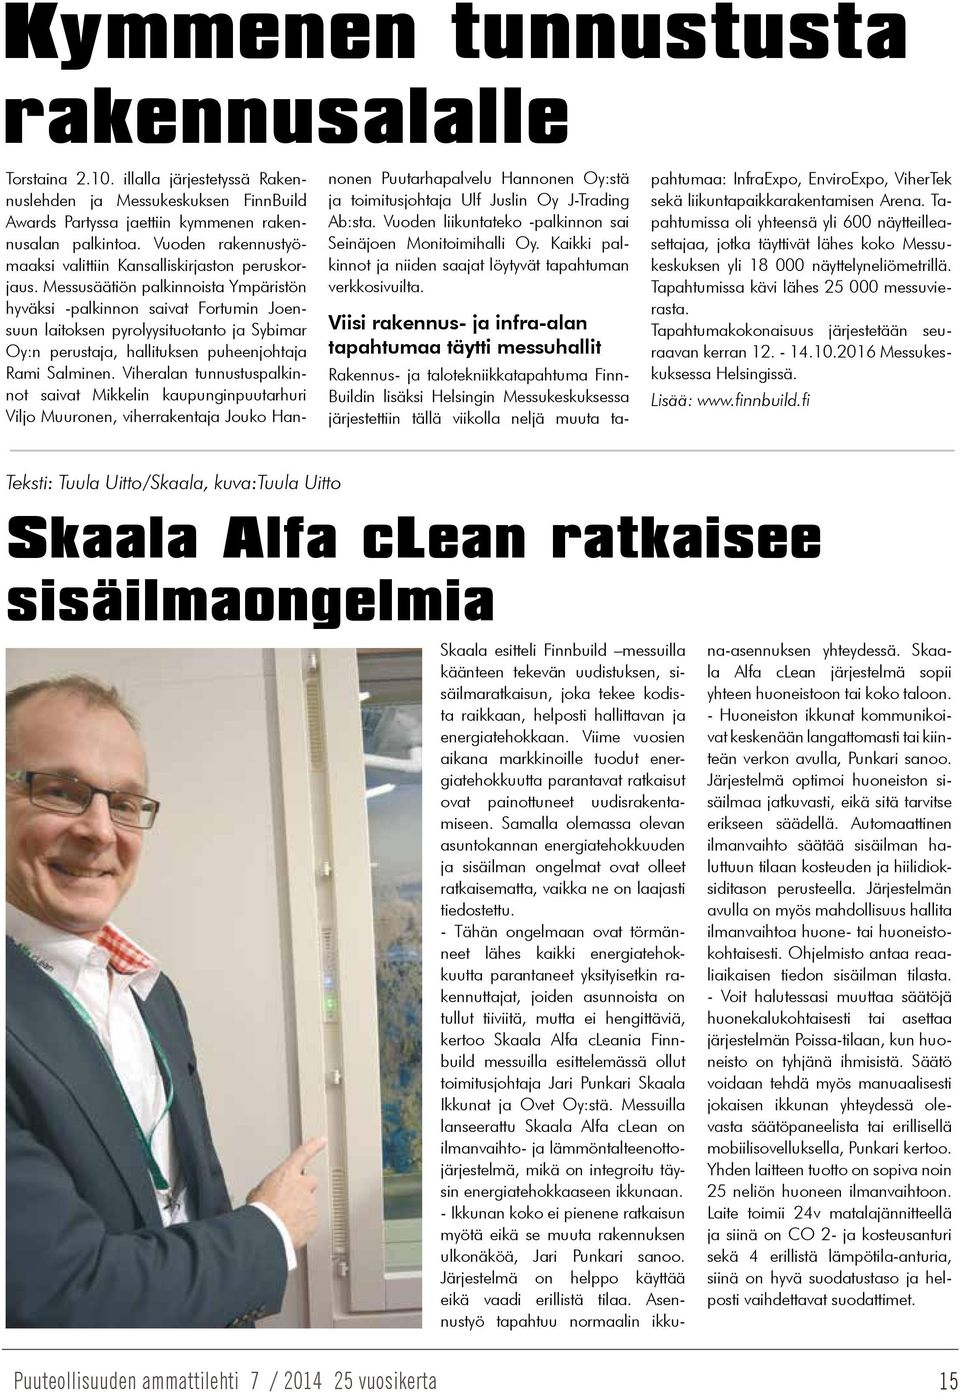 Messusäätiön palkinnoista Ympäristön hyväksi -palkinnon saivat Fortumin Joensuun laitoksen pyrolyysituotanto ja Sybimar Oy:n perustaja, hallituksen puheenjohtaja Rami Salminen.